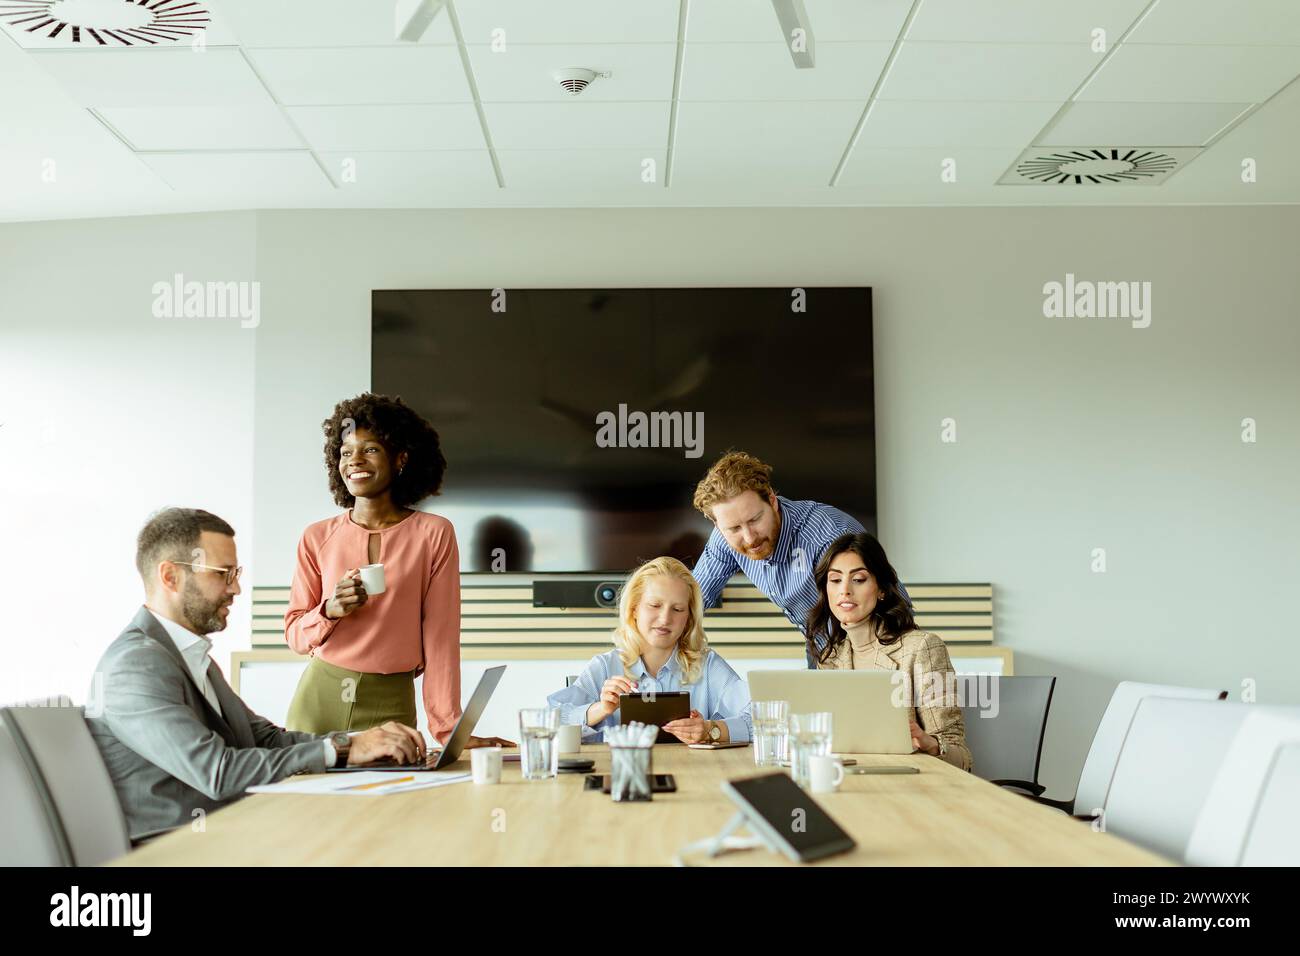 Multiethnische Gruppe von Fachleuten, die an einem Konferenztisch in einem hell beleuchteten Büro ein Brainstorming durchführen. Stockfoto